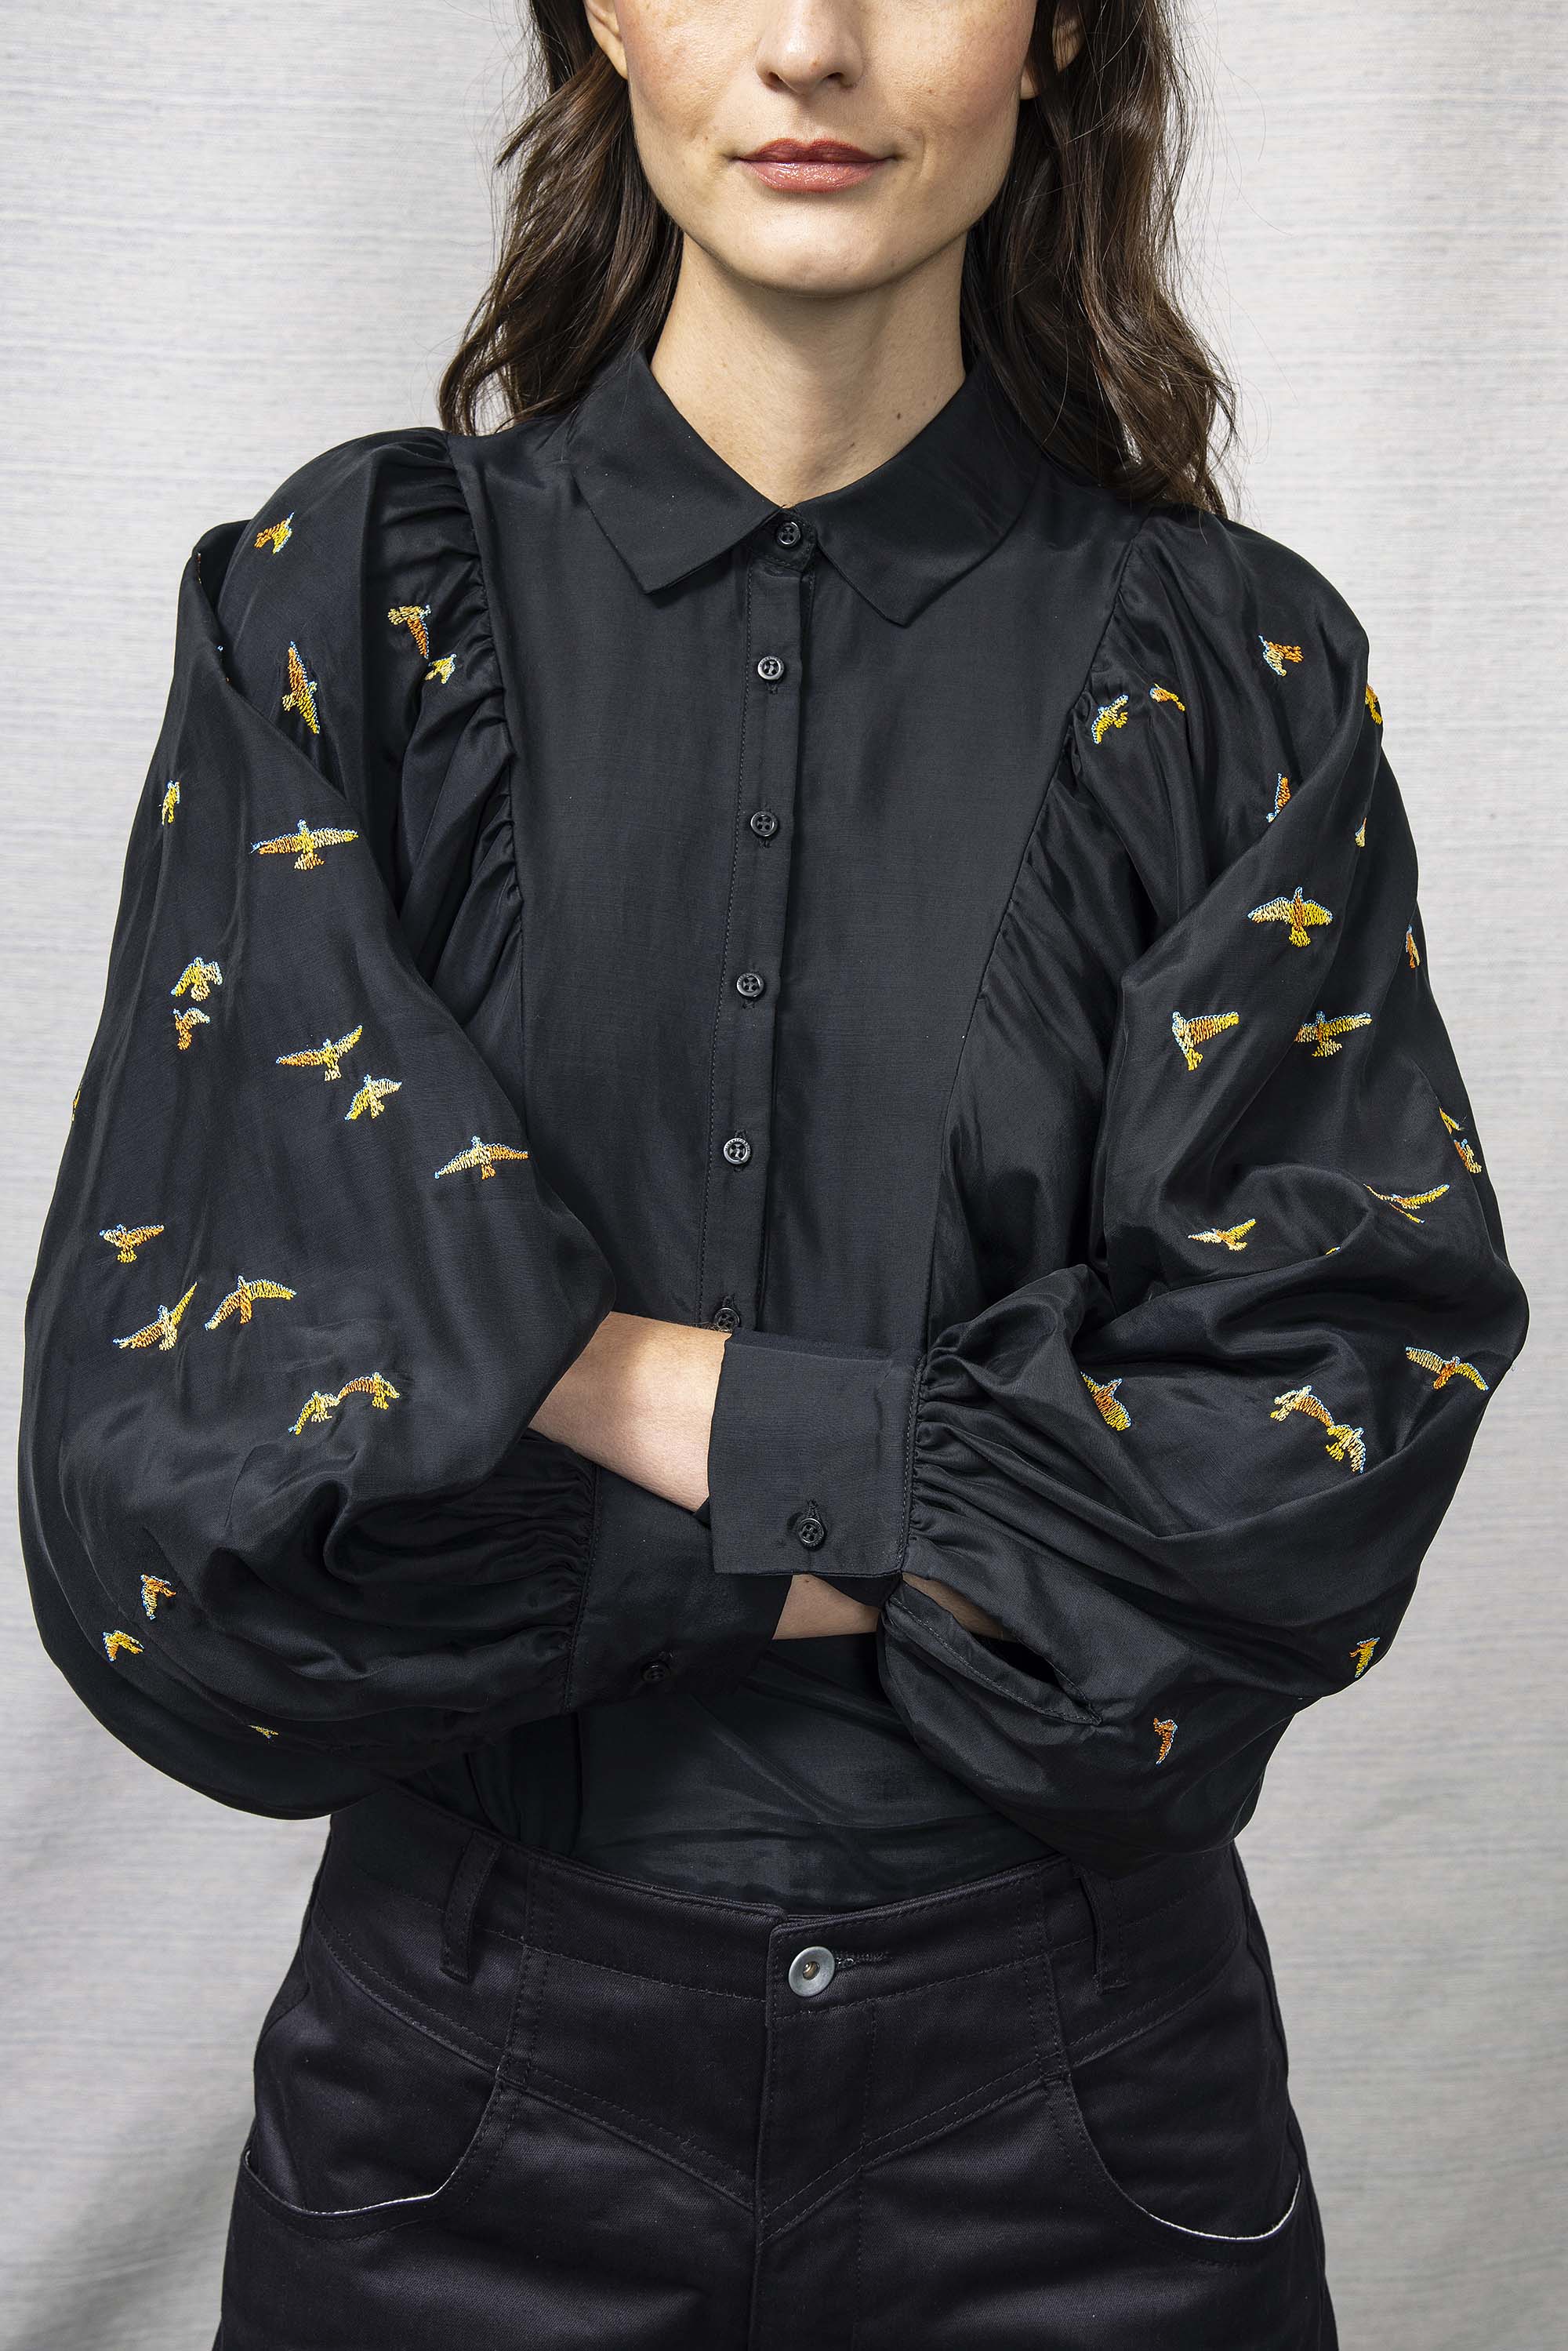 Chemise Carina Noir Vuelo Especial classique intemporelle, la chemise dessine la silhouette